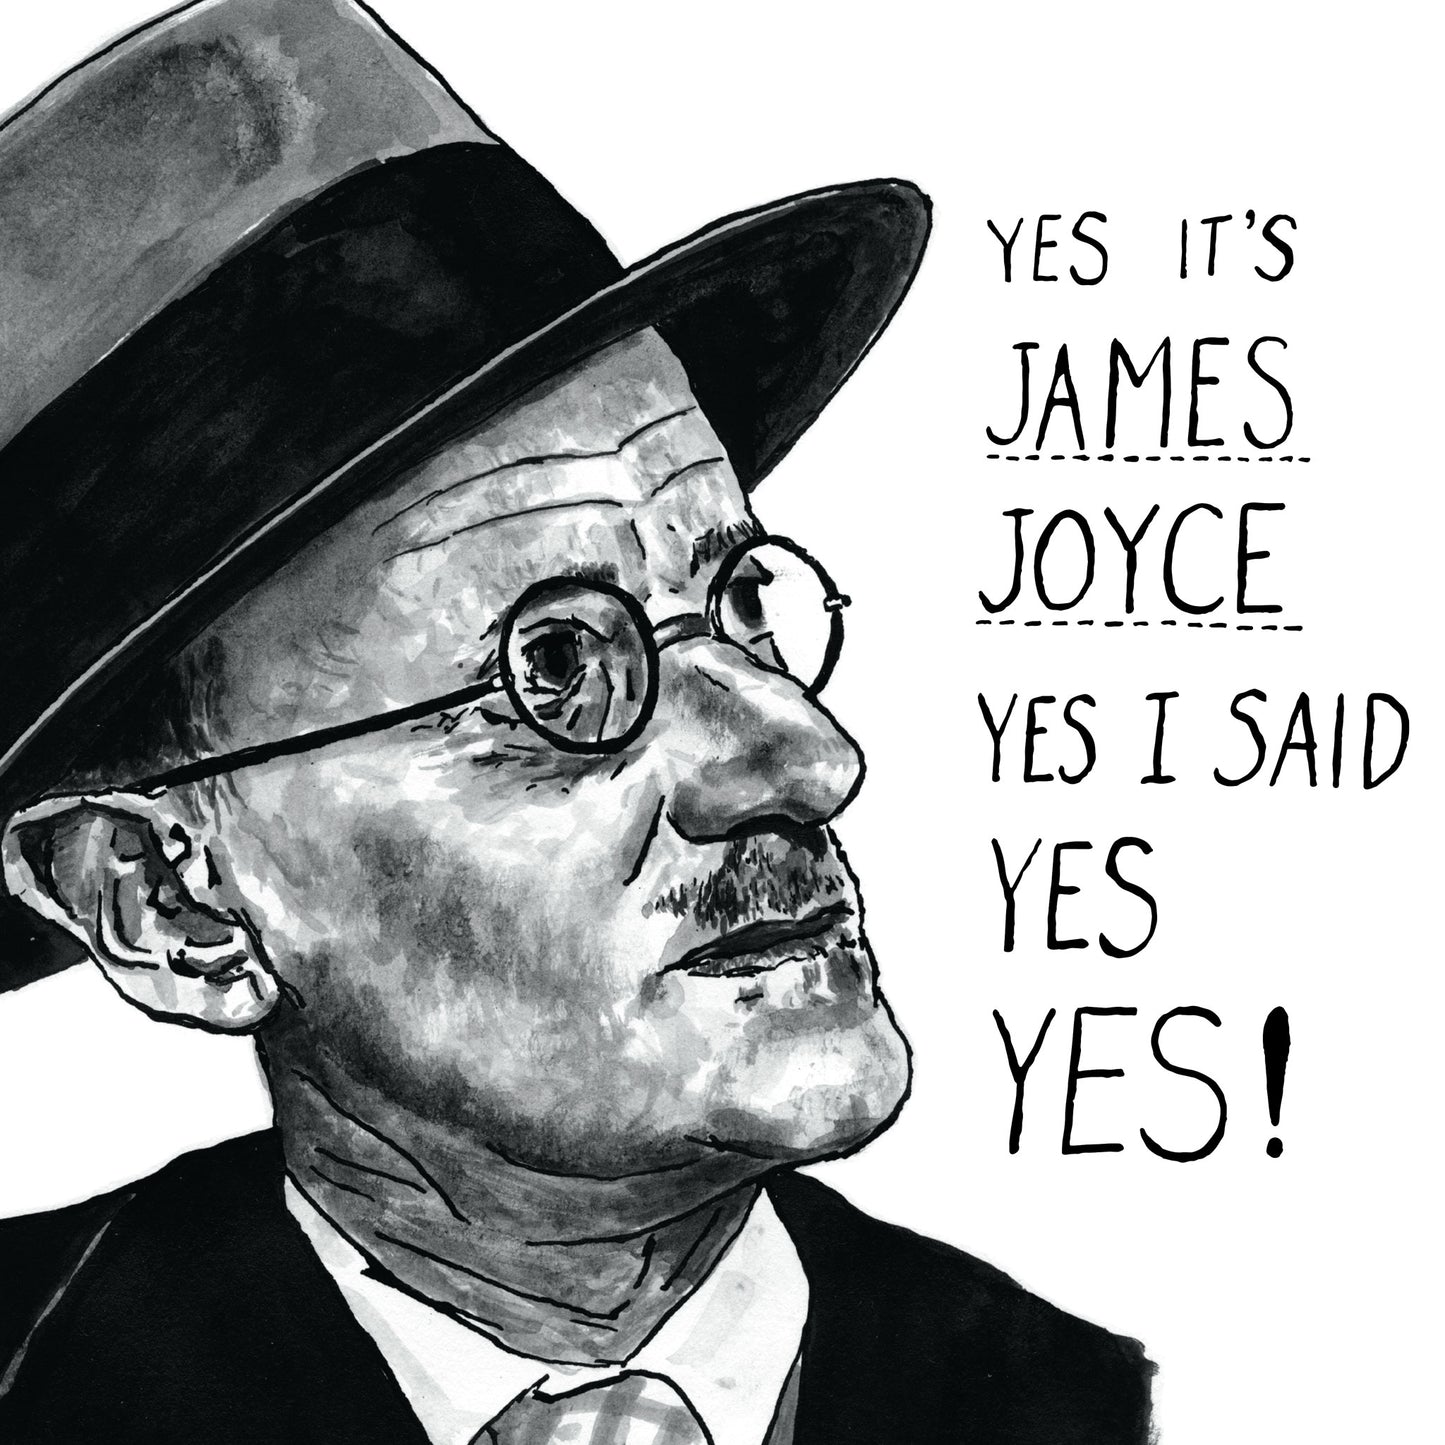 James Joyce Portrait Poster Print